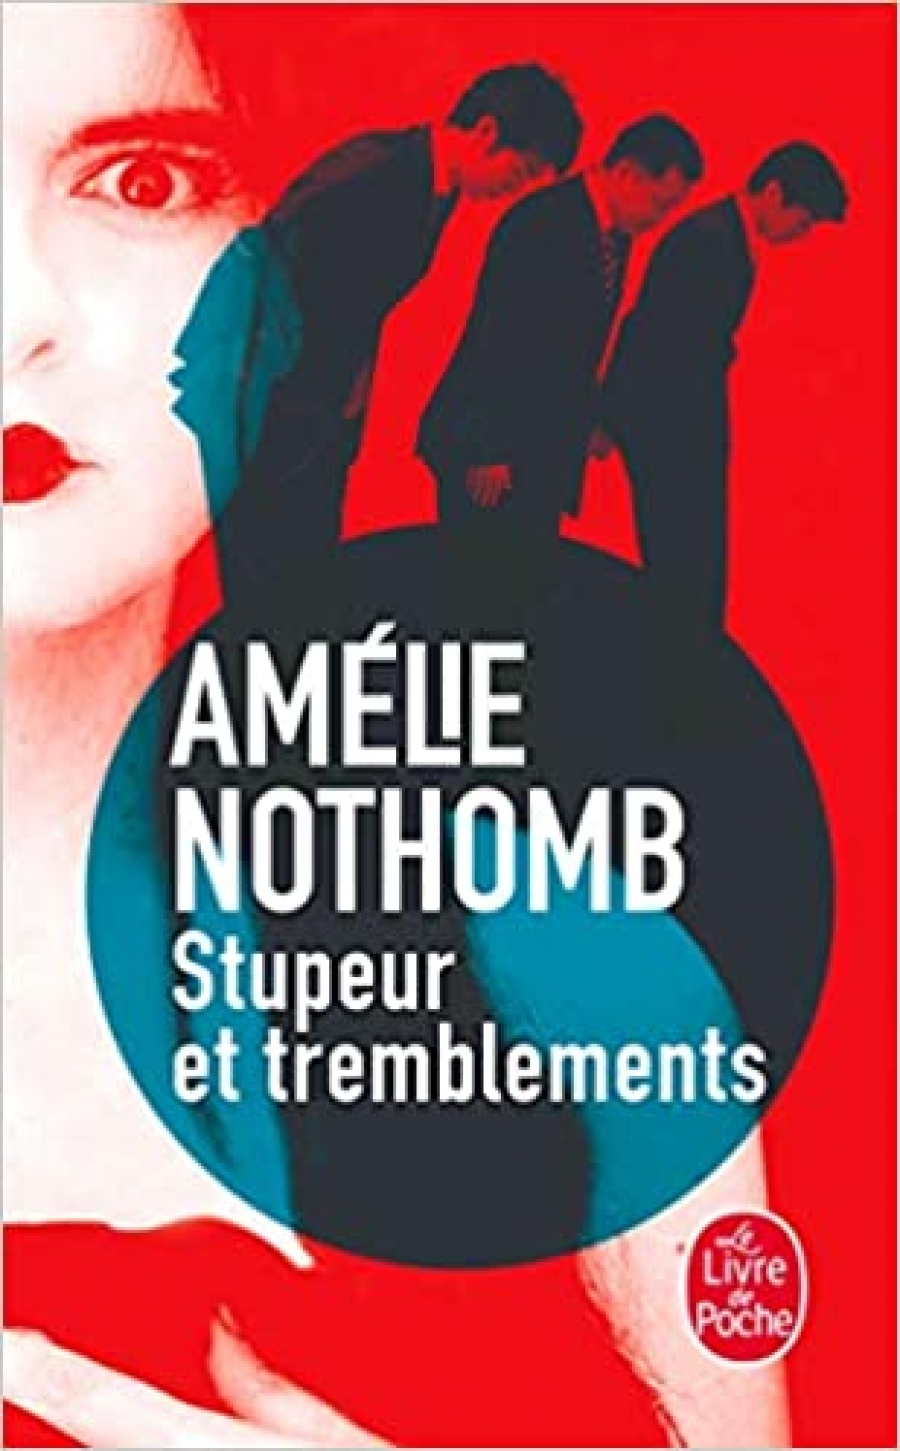 Nothomb, Amelie Stupeur et tremblements 